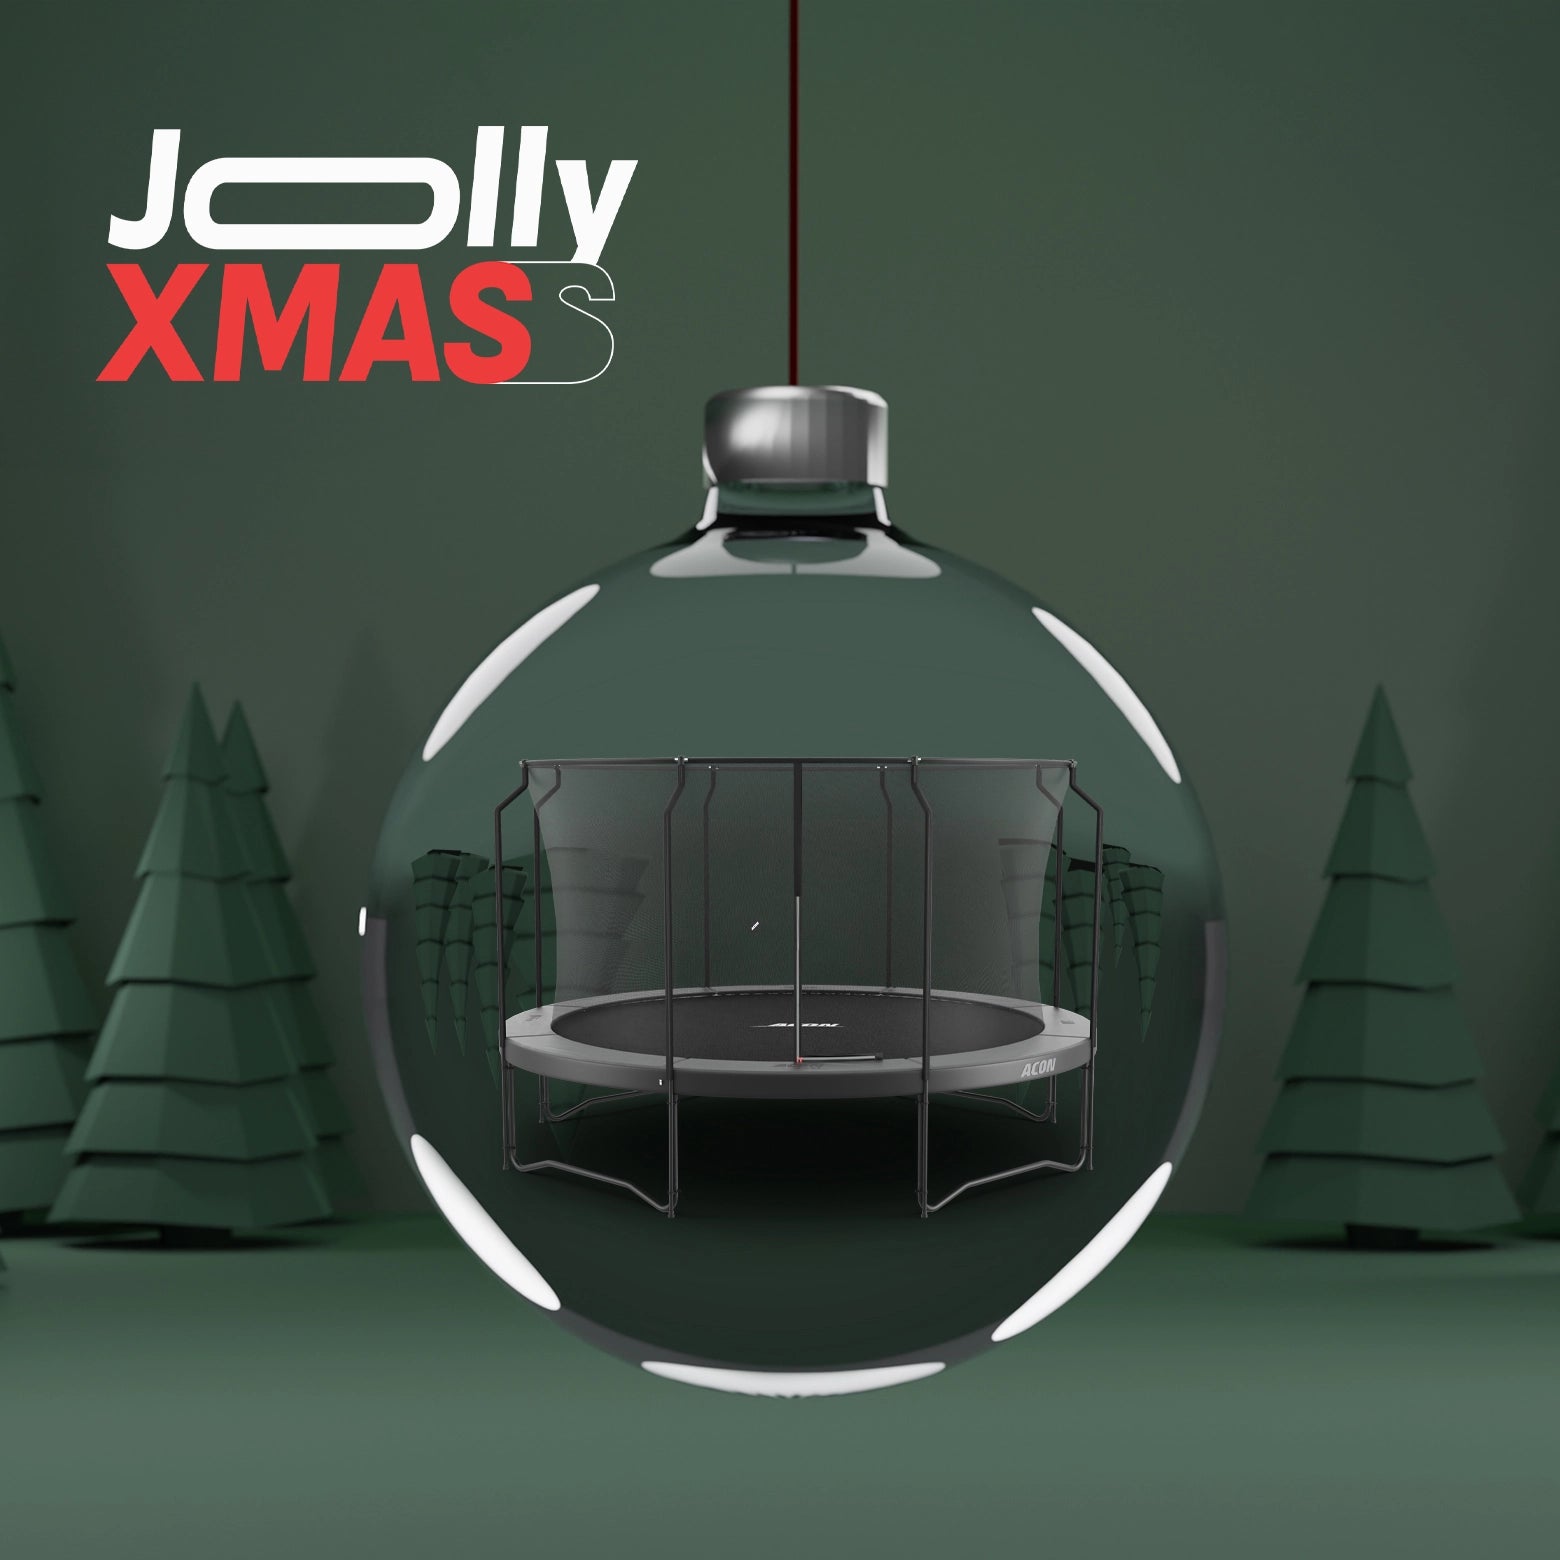 Jolly Xmas - 4,3m svart trampolin inuti en juldekorationskula.